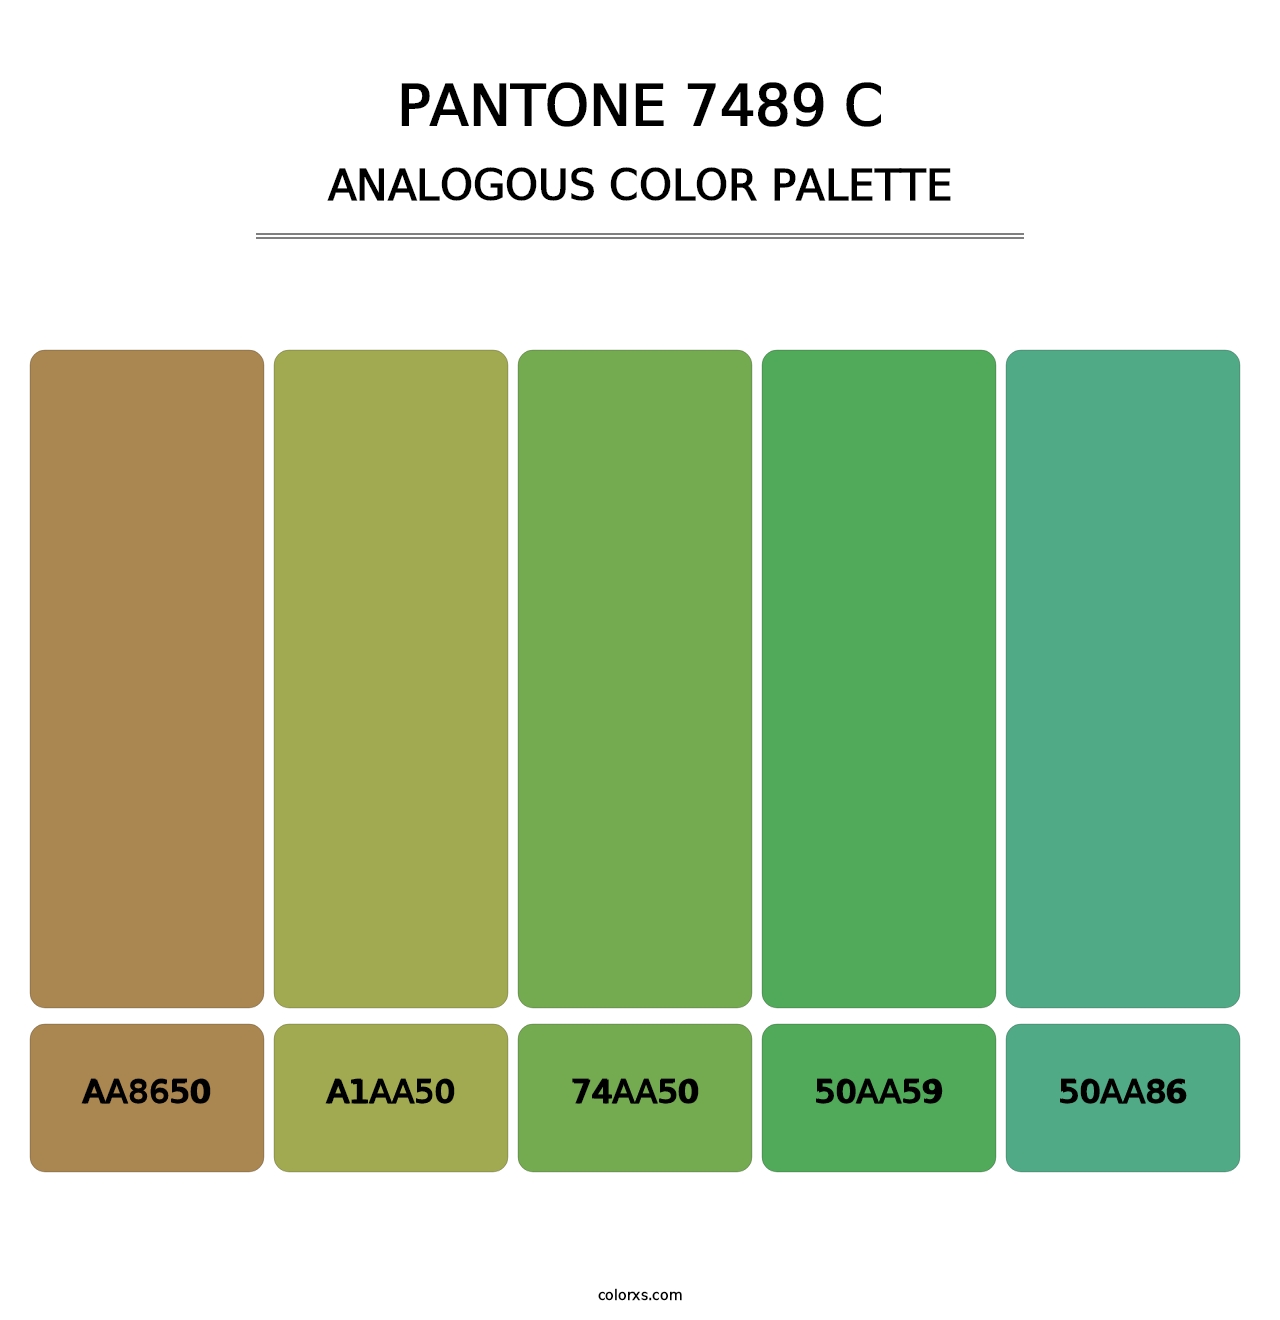 PANTONE 7489 C - Analogous Color Palette